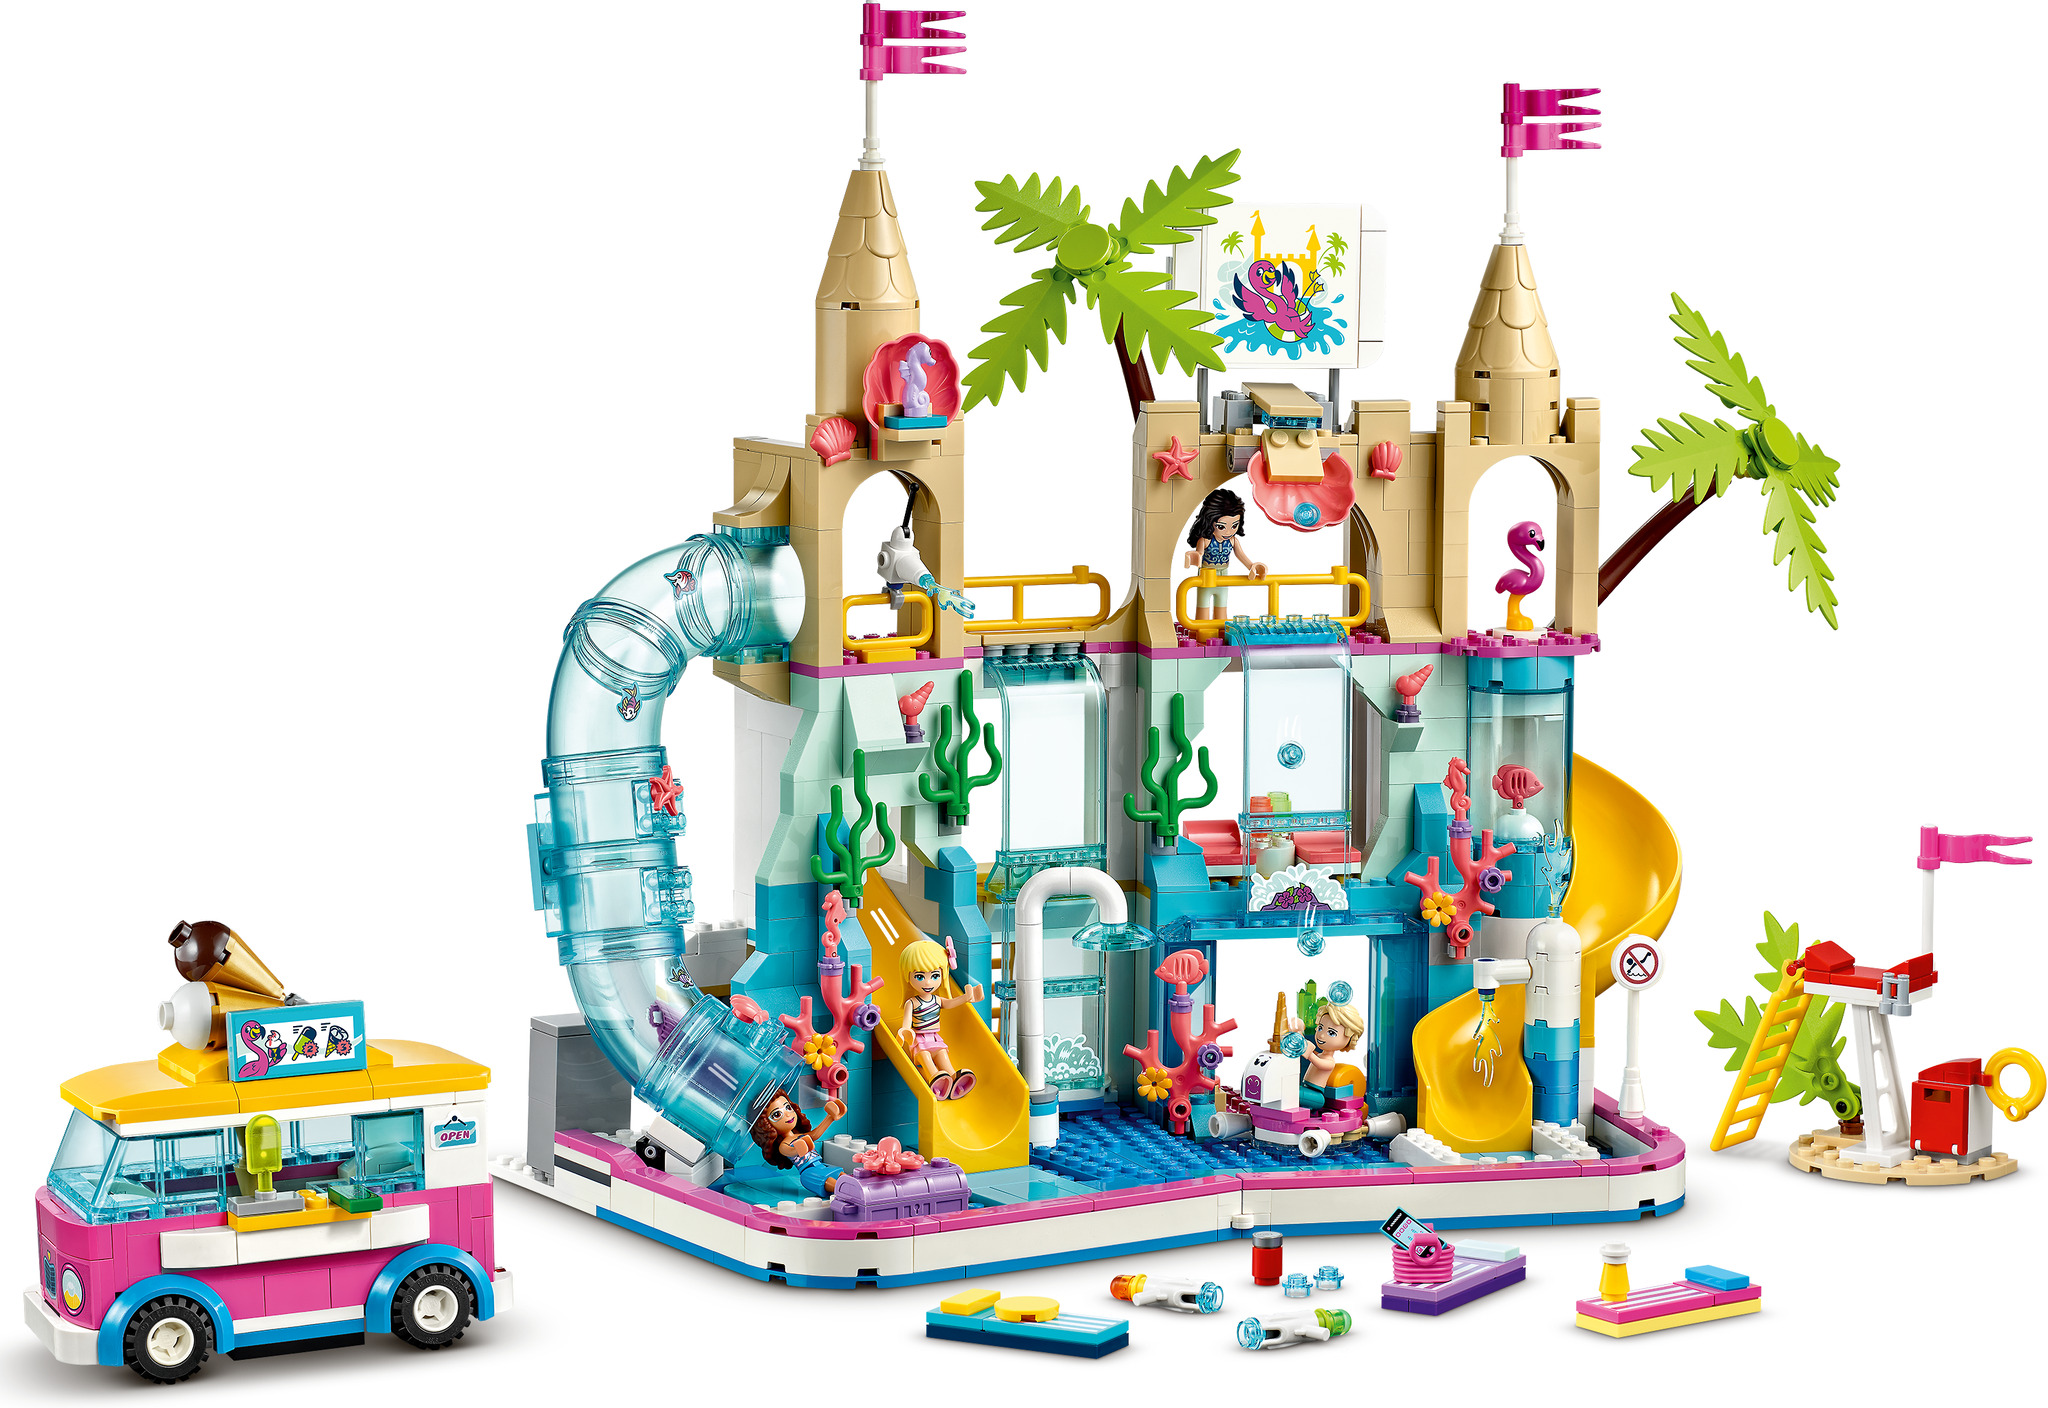 LEGO Friends 41430 - Summer Fun Water Park | Mattonito